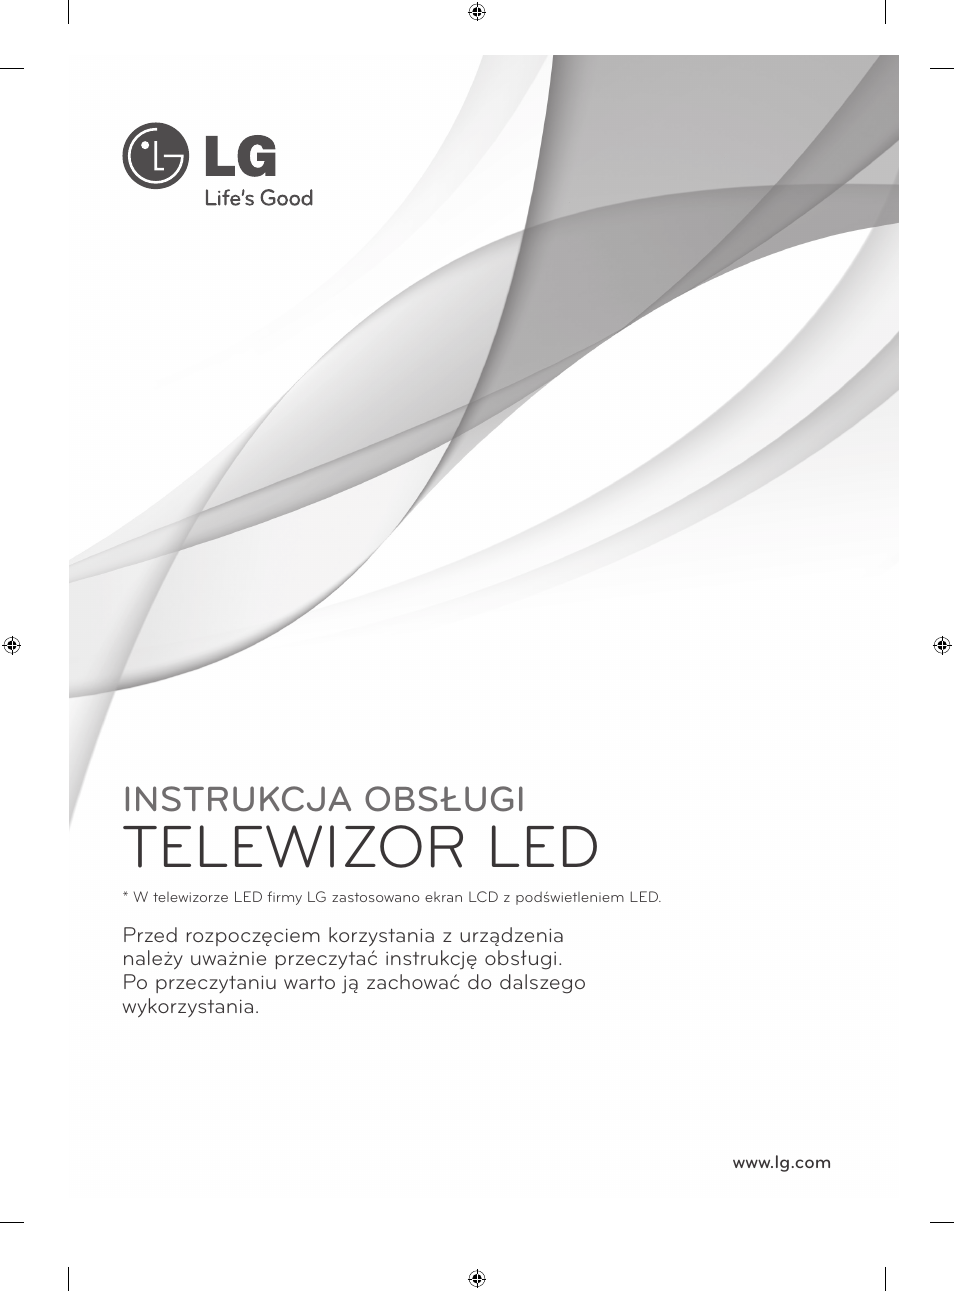 Telewizor led, Instrukcja obsługi | LG 42LA620S User Manual | Page 67 / 552